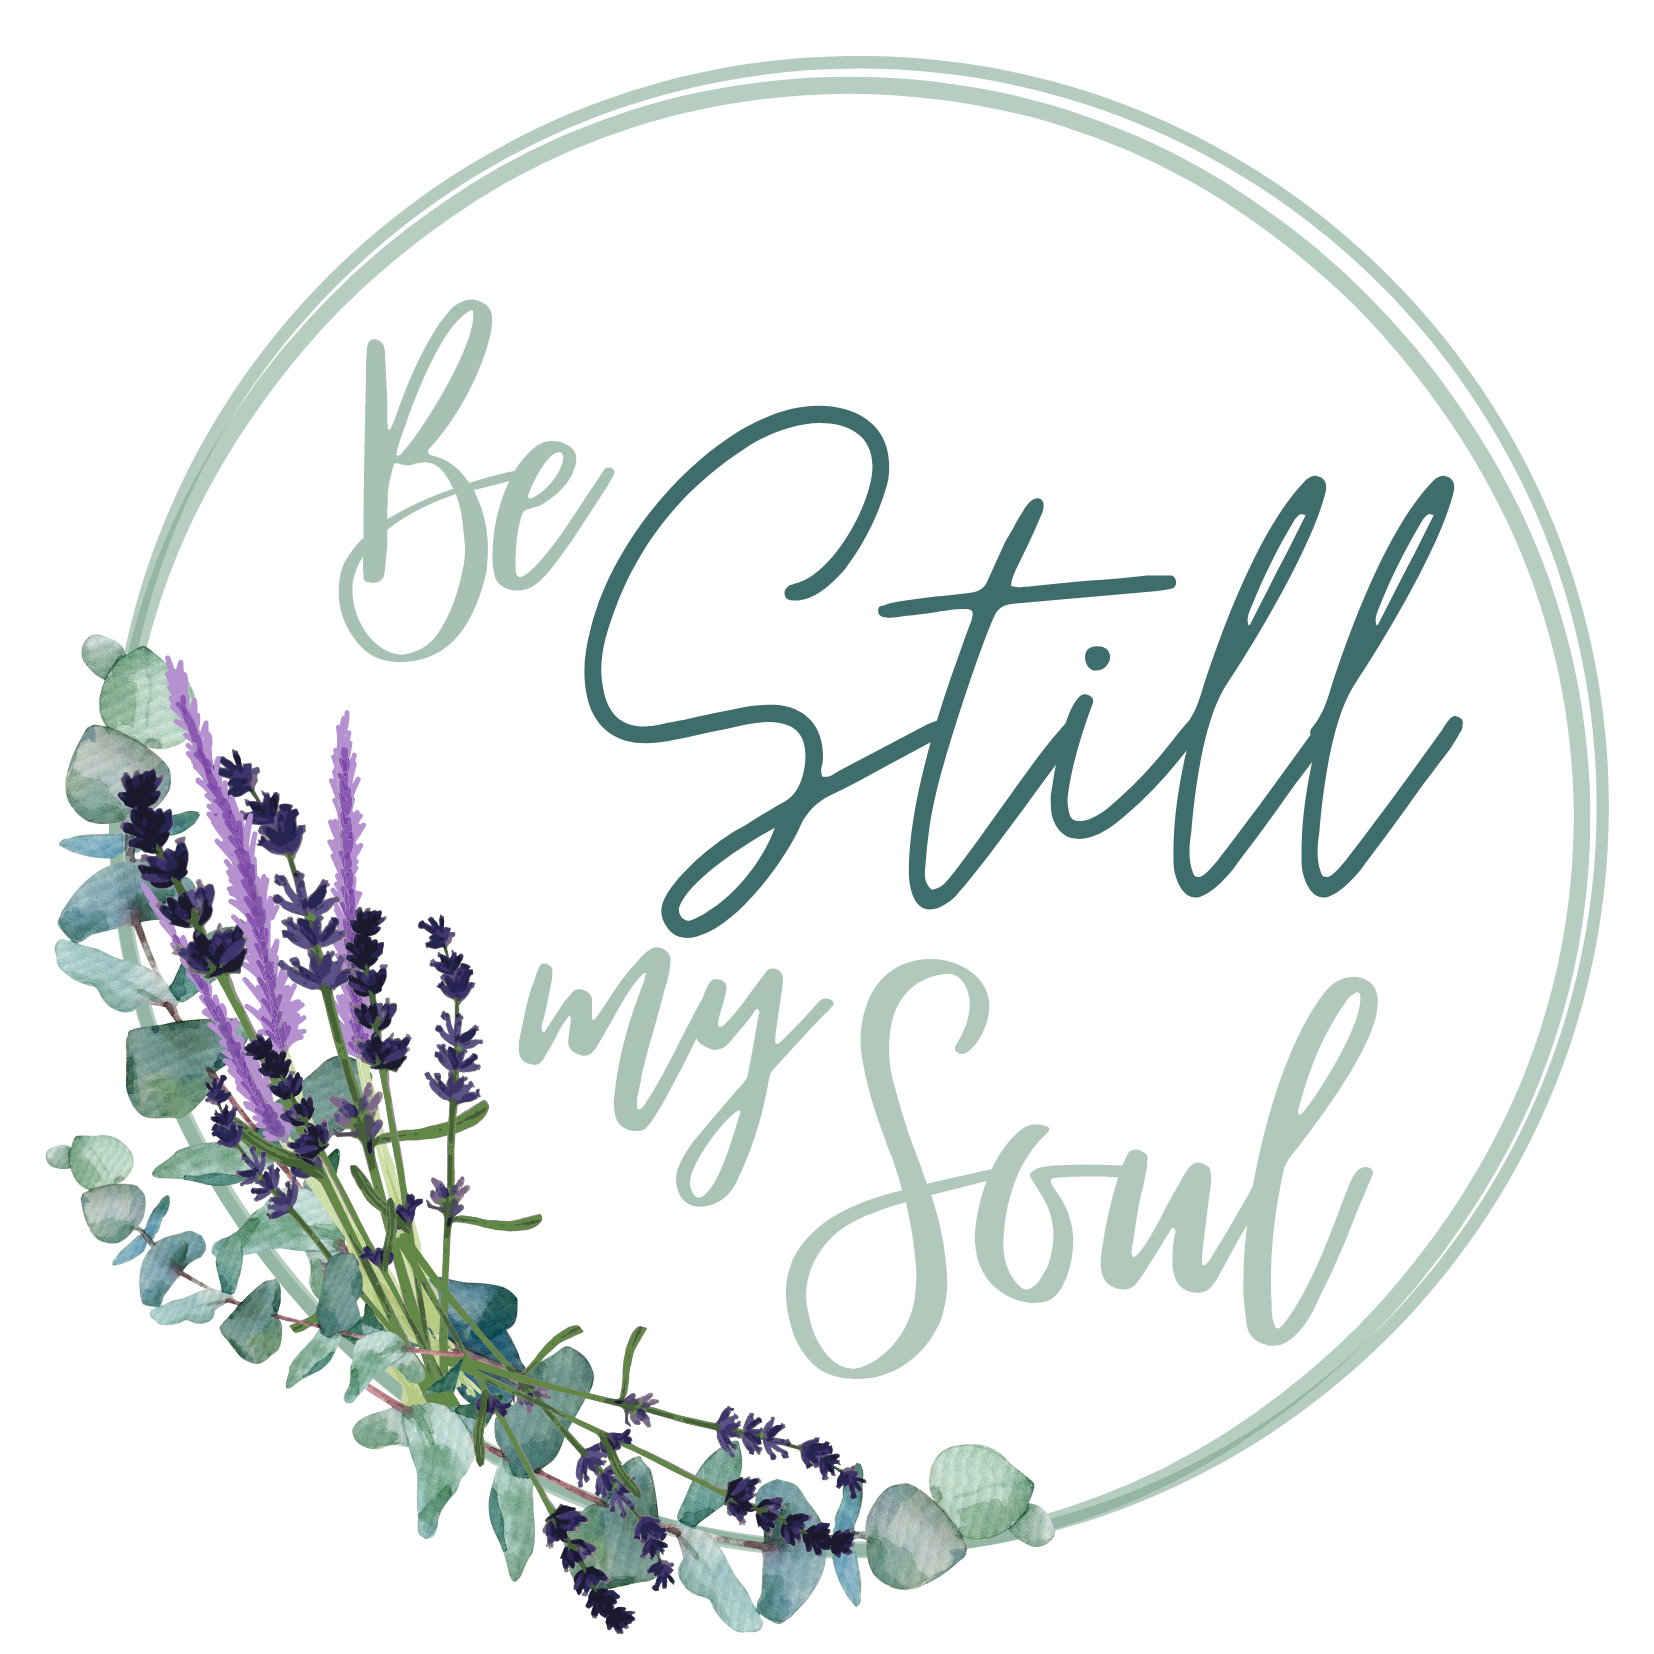 Session 4 - Be Still My Soul